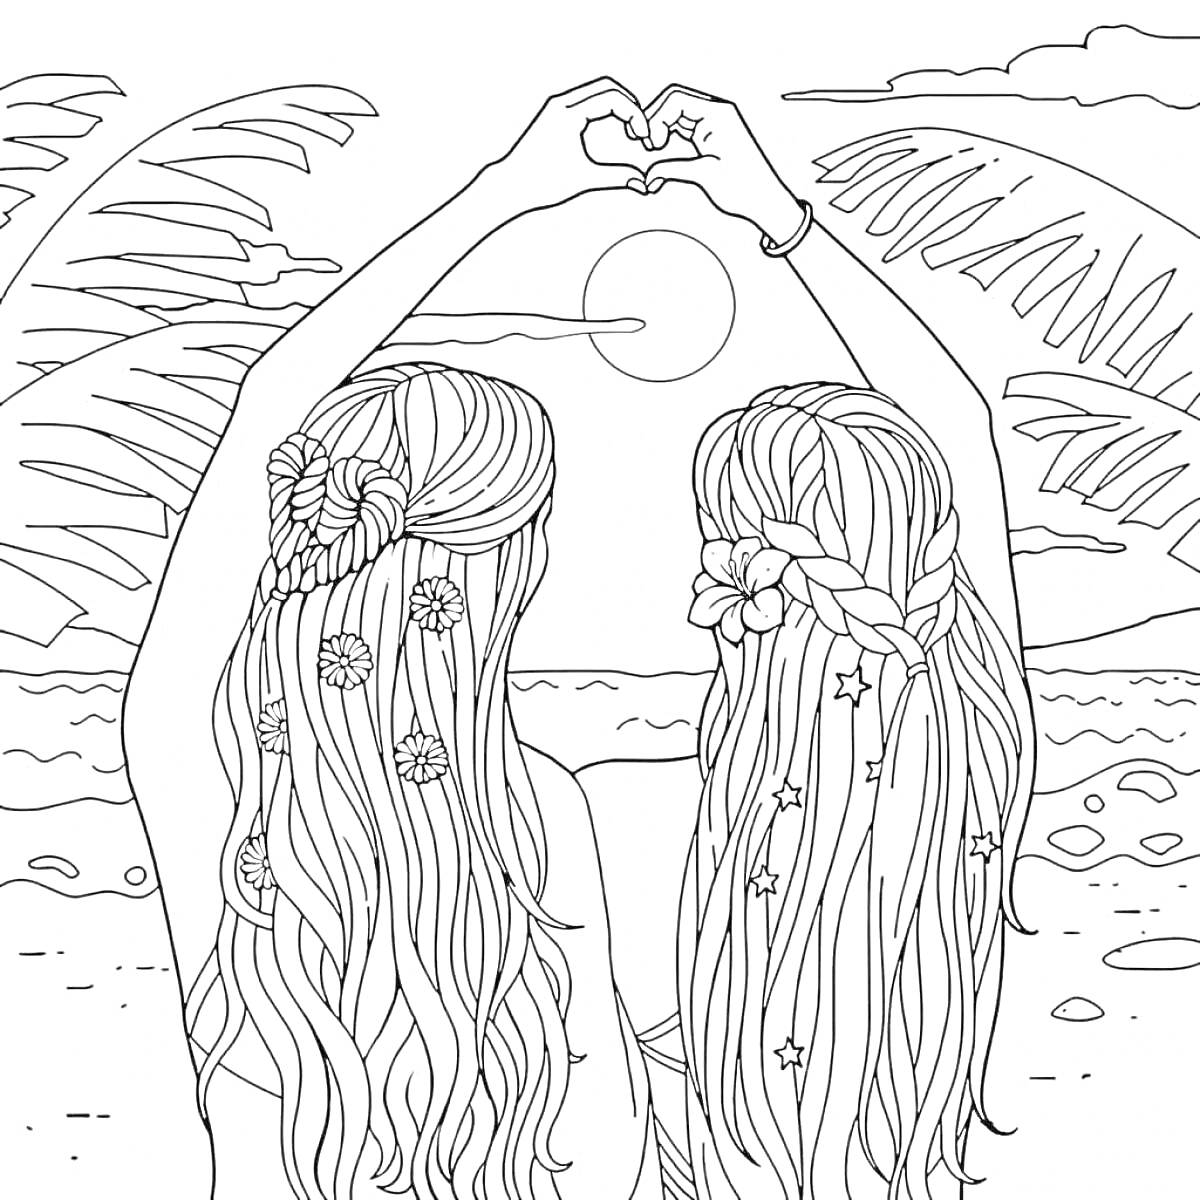 Раскраска Две девочки с длинными волосами на пляже, смотров очередь на закат, складывают руки в форме сердца